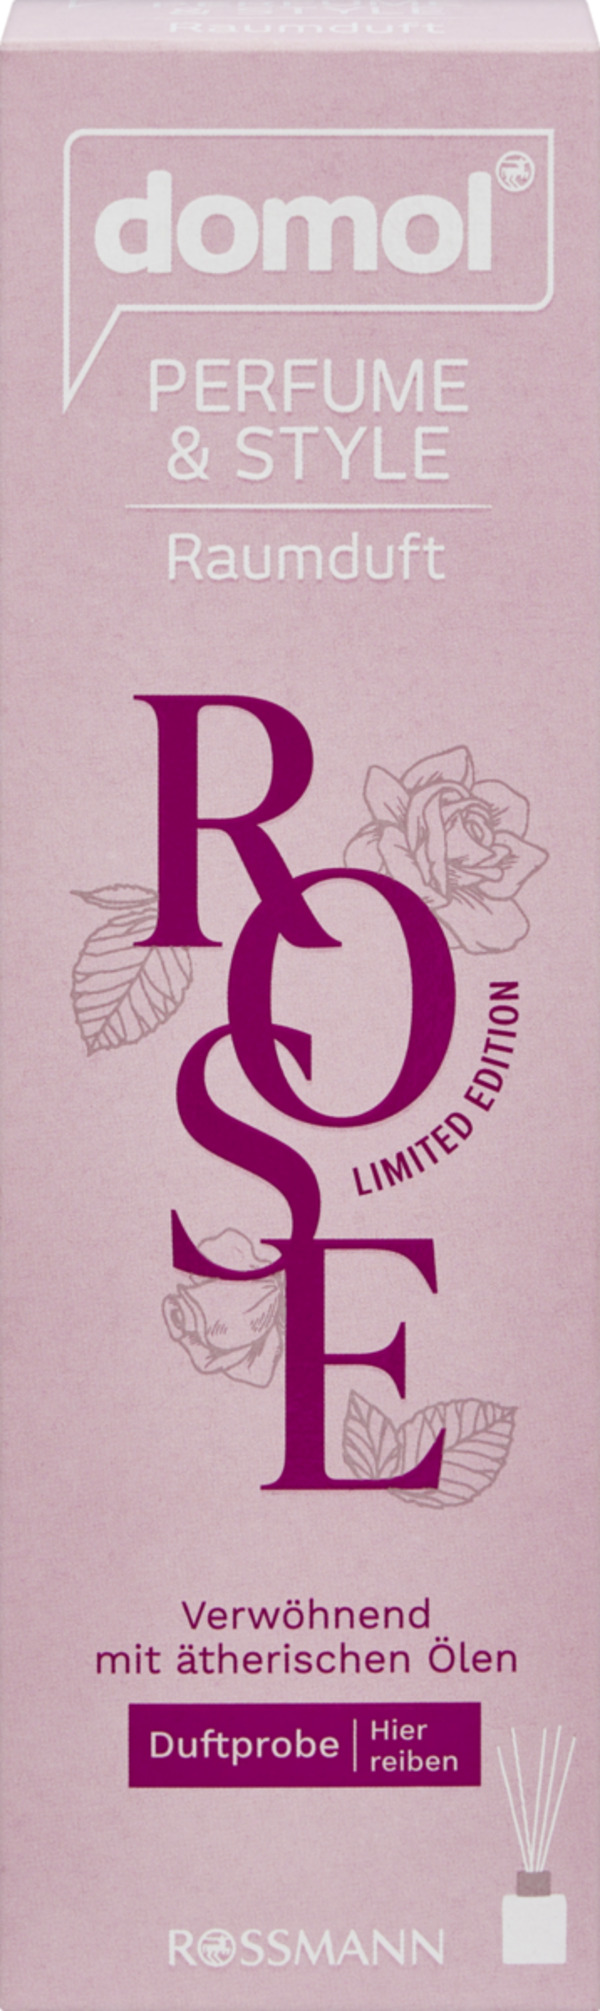 Bild 1 von domol Perfume & Style Raumduft Rose, 50 ml